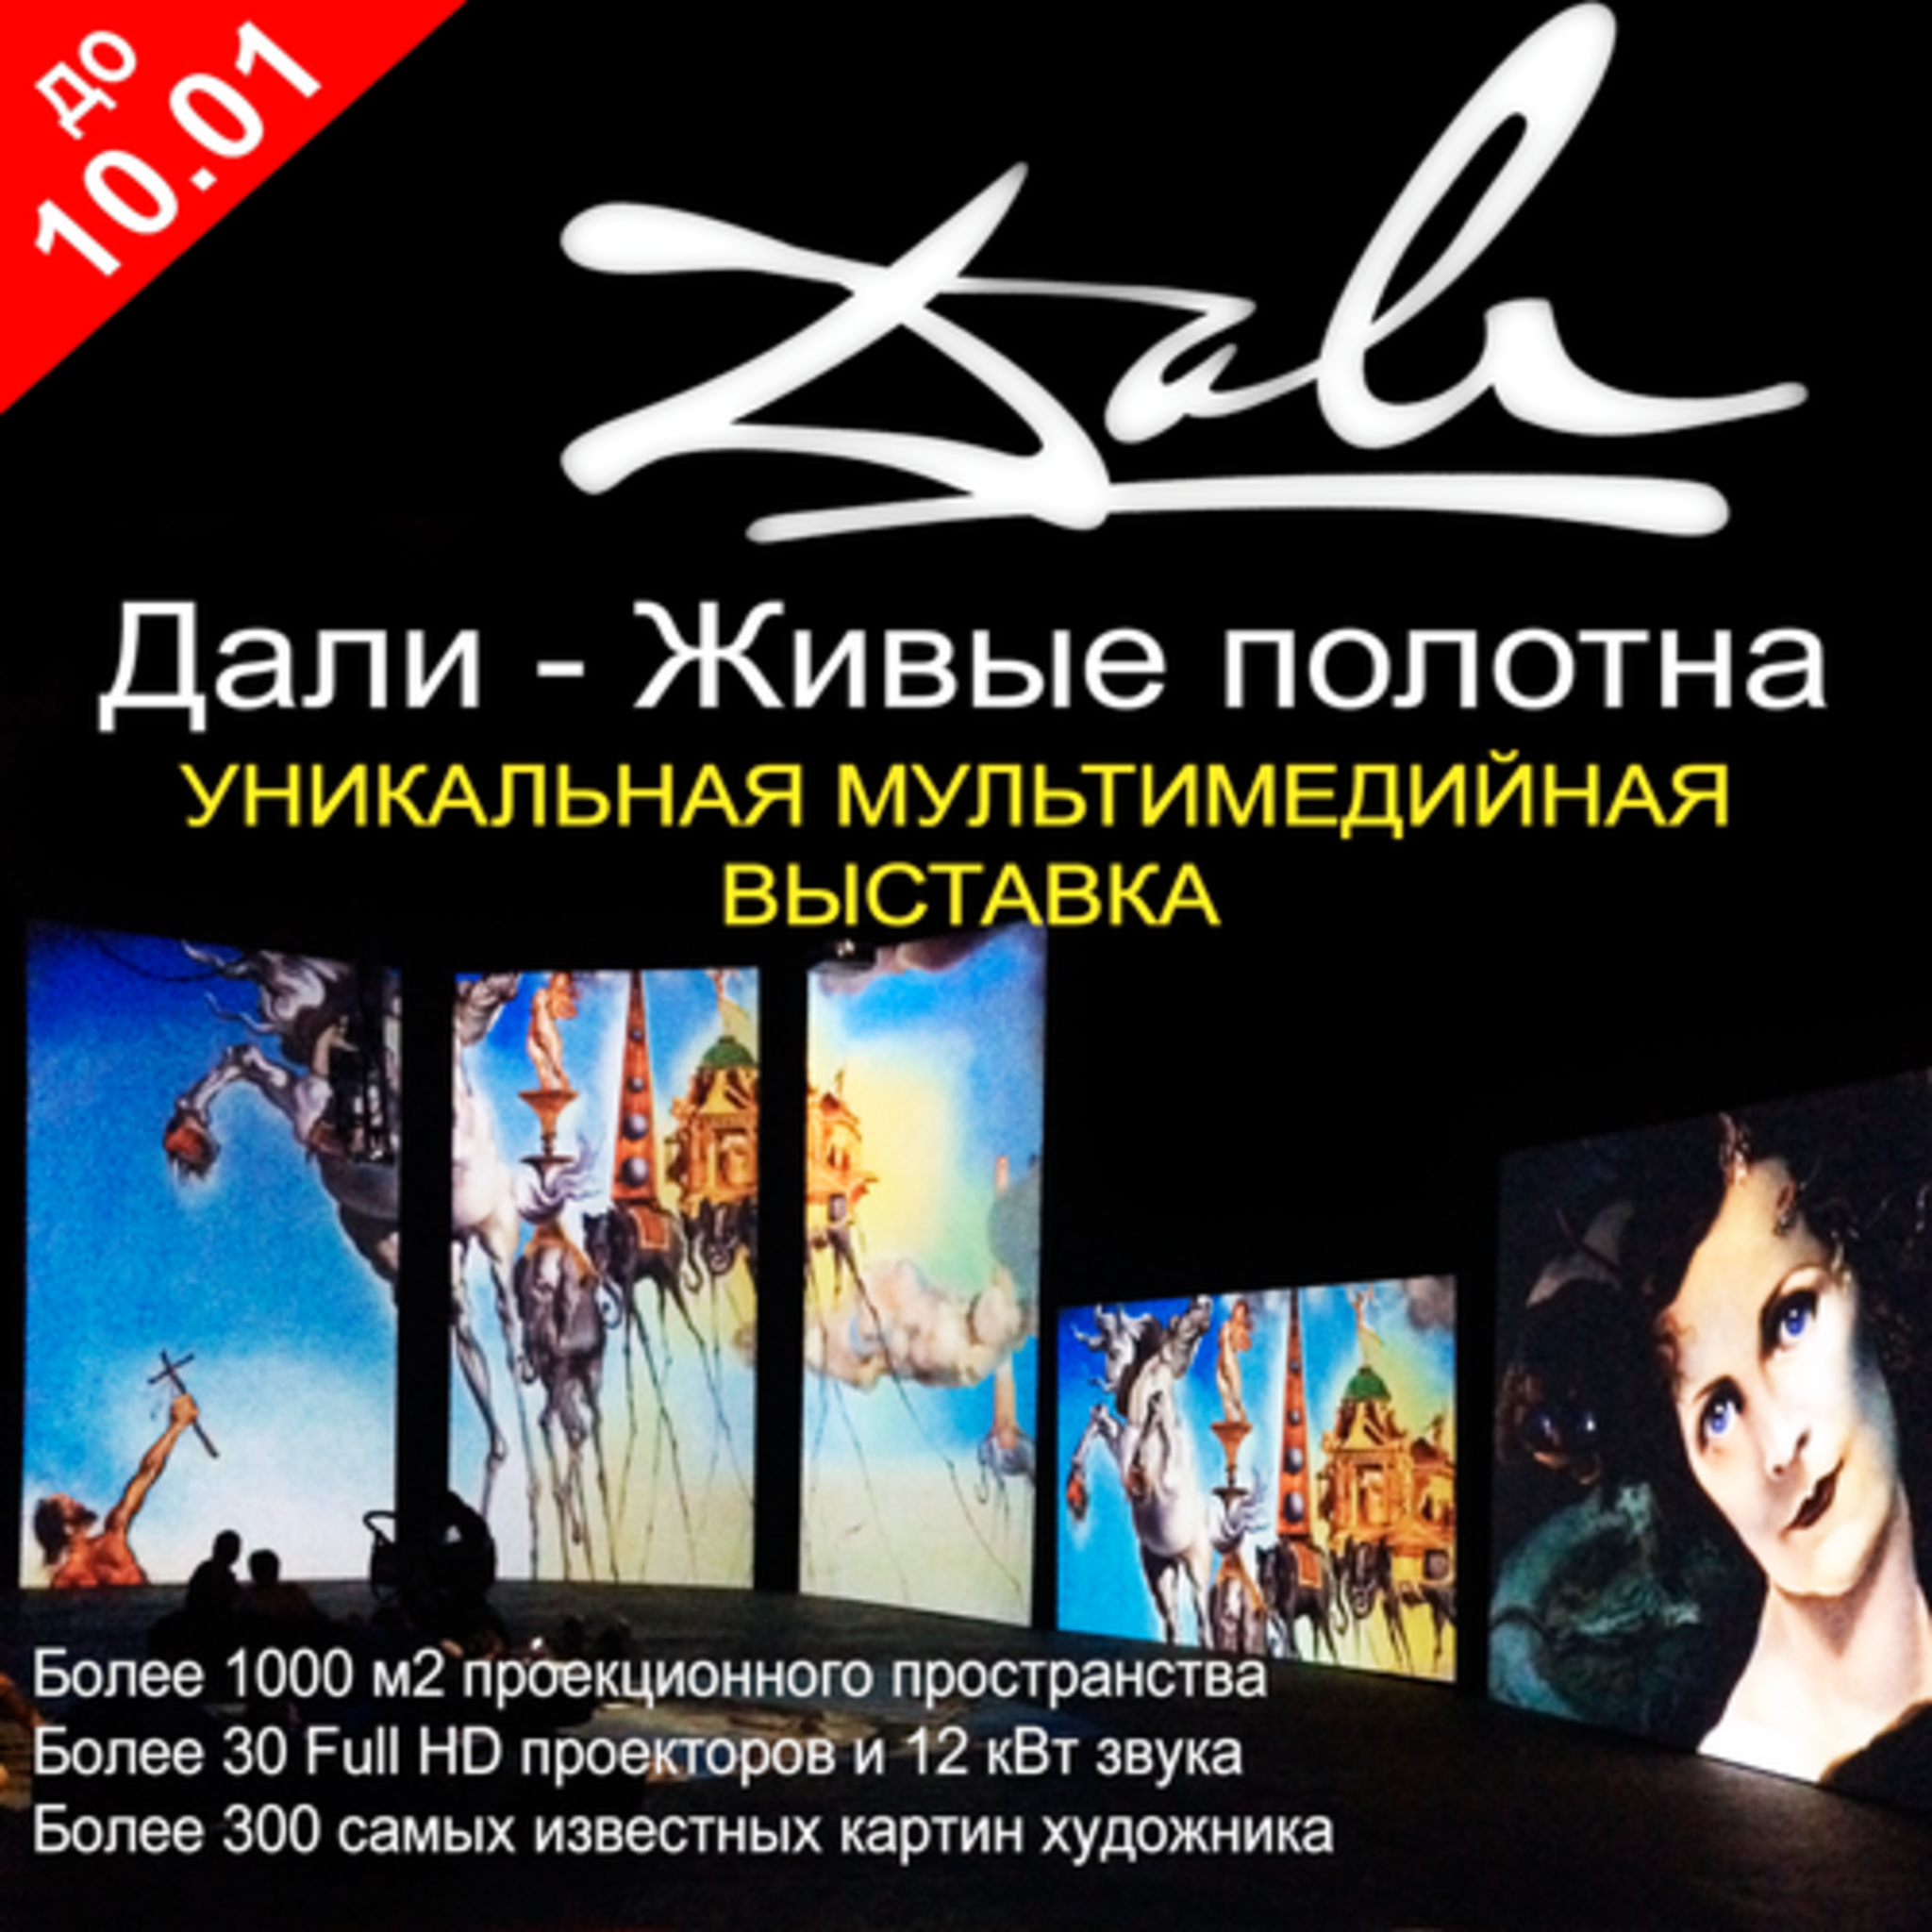 Dali. Live web in Nizhny Novgorod